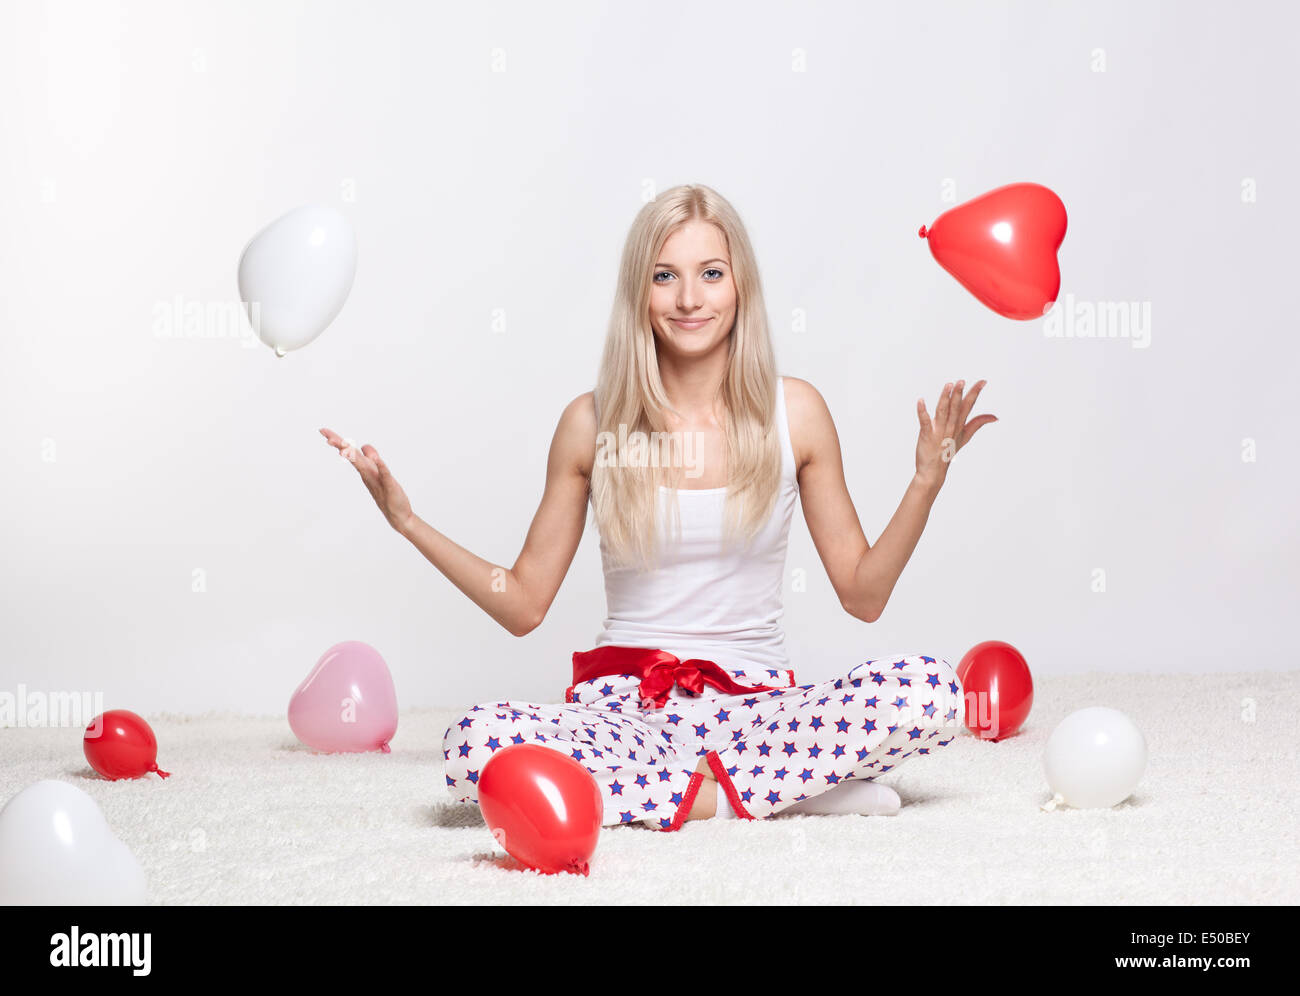 Femme blonde avec des ballons Banque D'Images